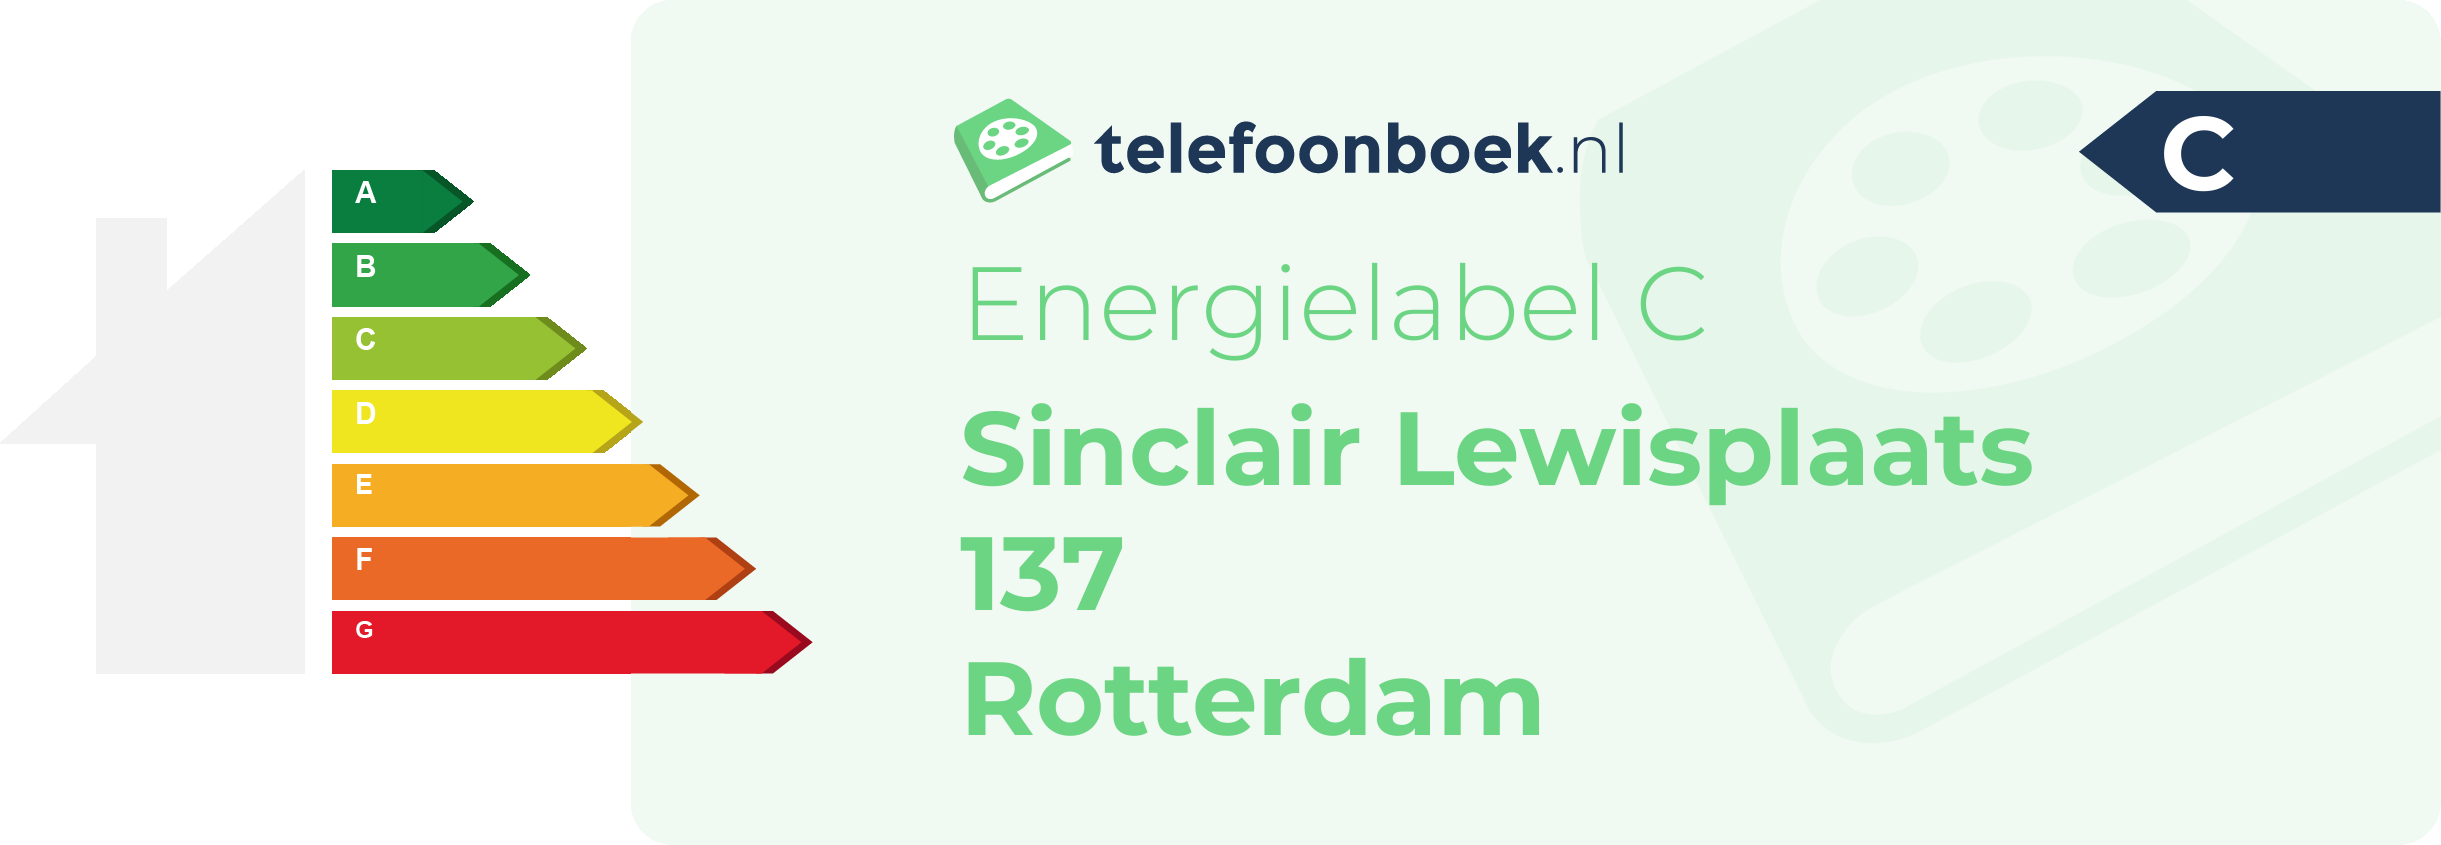 Energielabel Sinclair Lewisplaats 137 Rotterdam